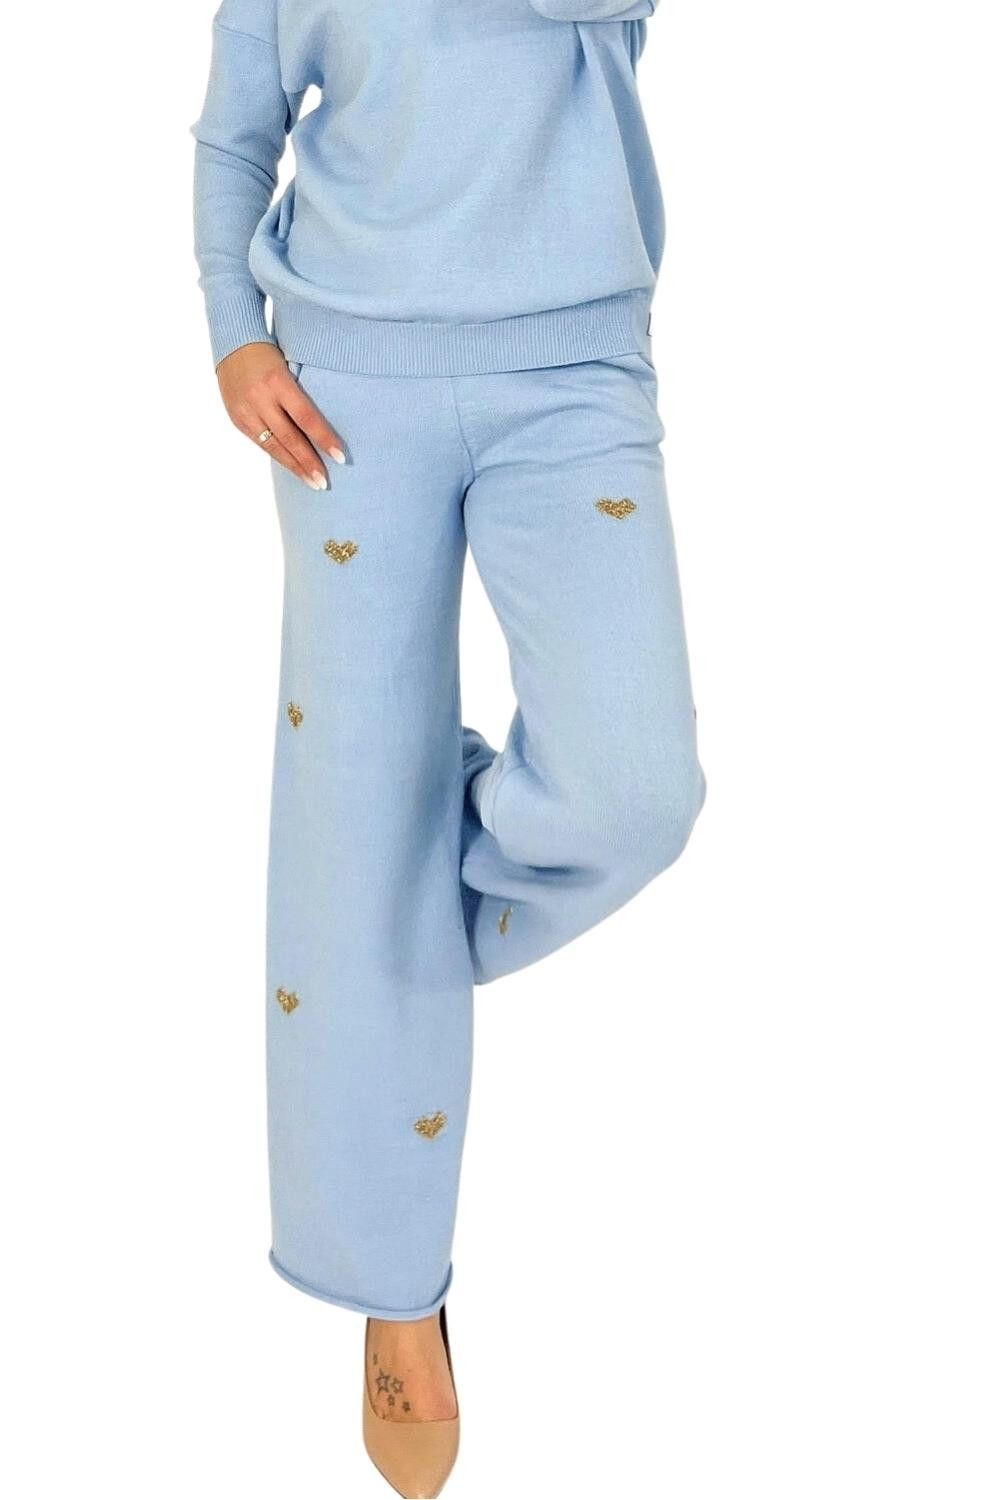 Dámské kalhoty Comfort fit blue - MM FASHION světle modrá Univerzální